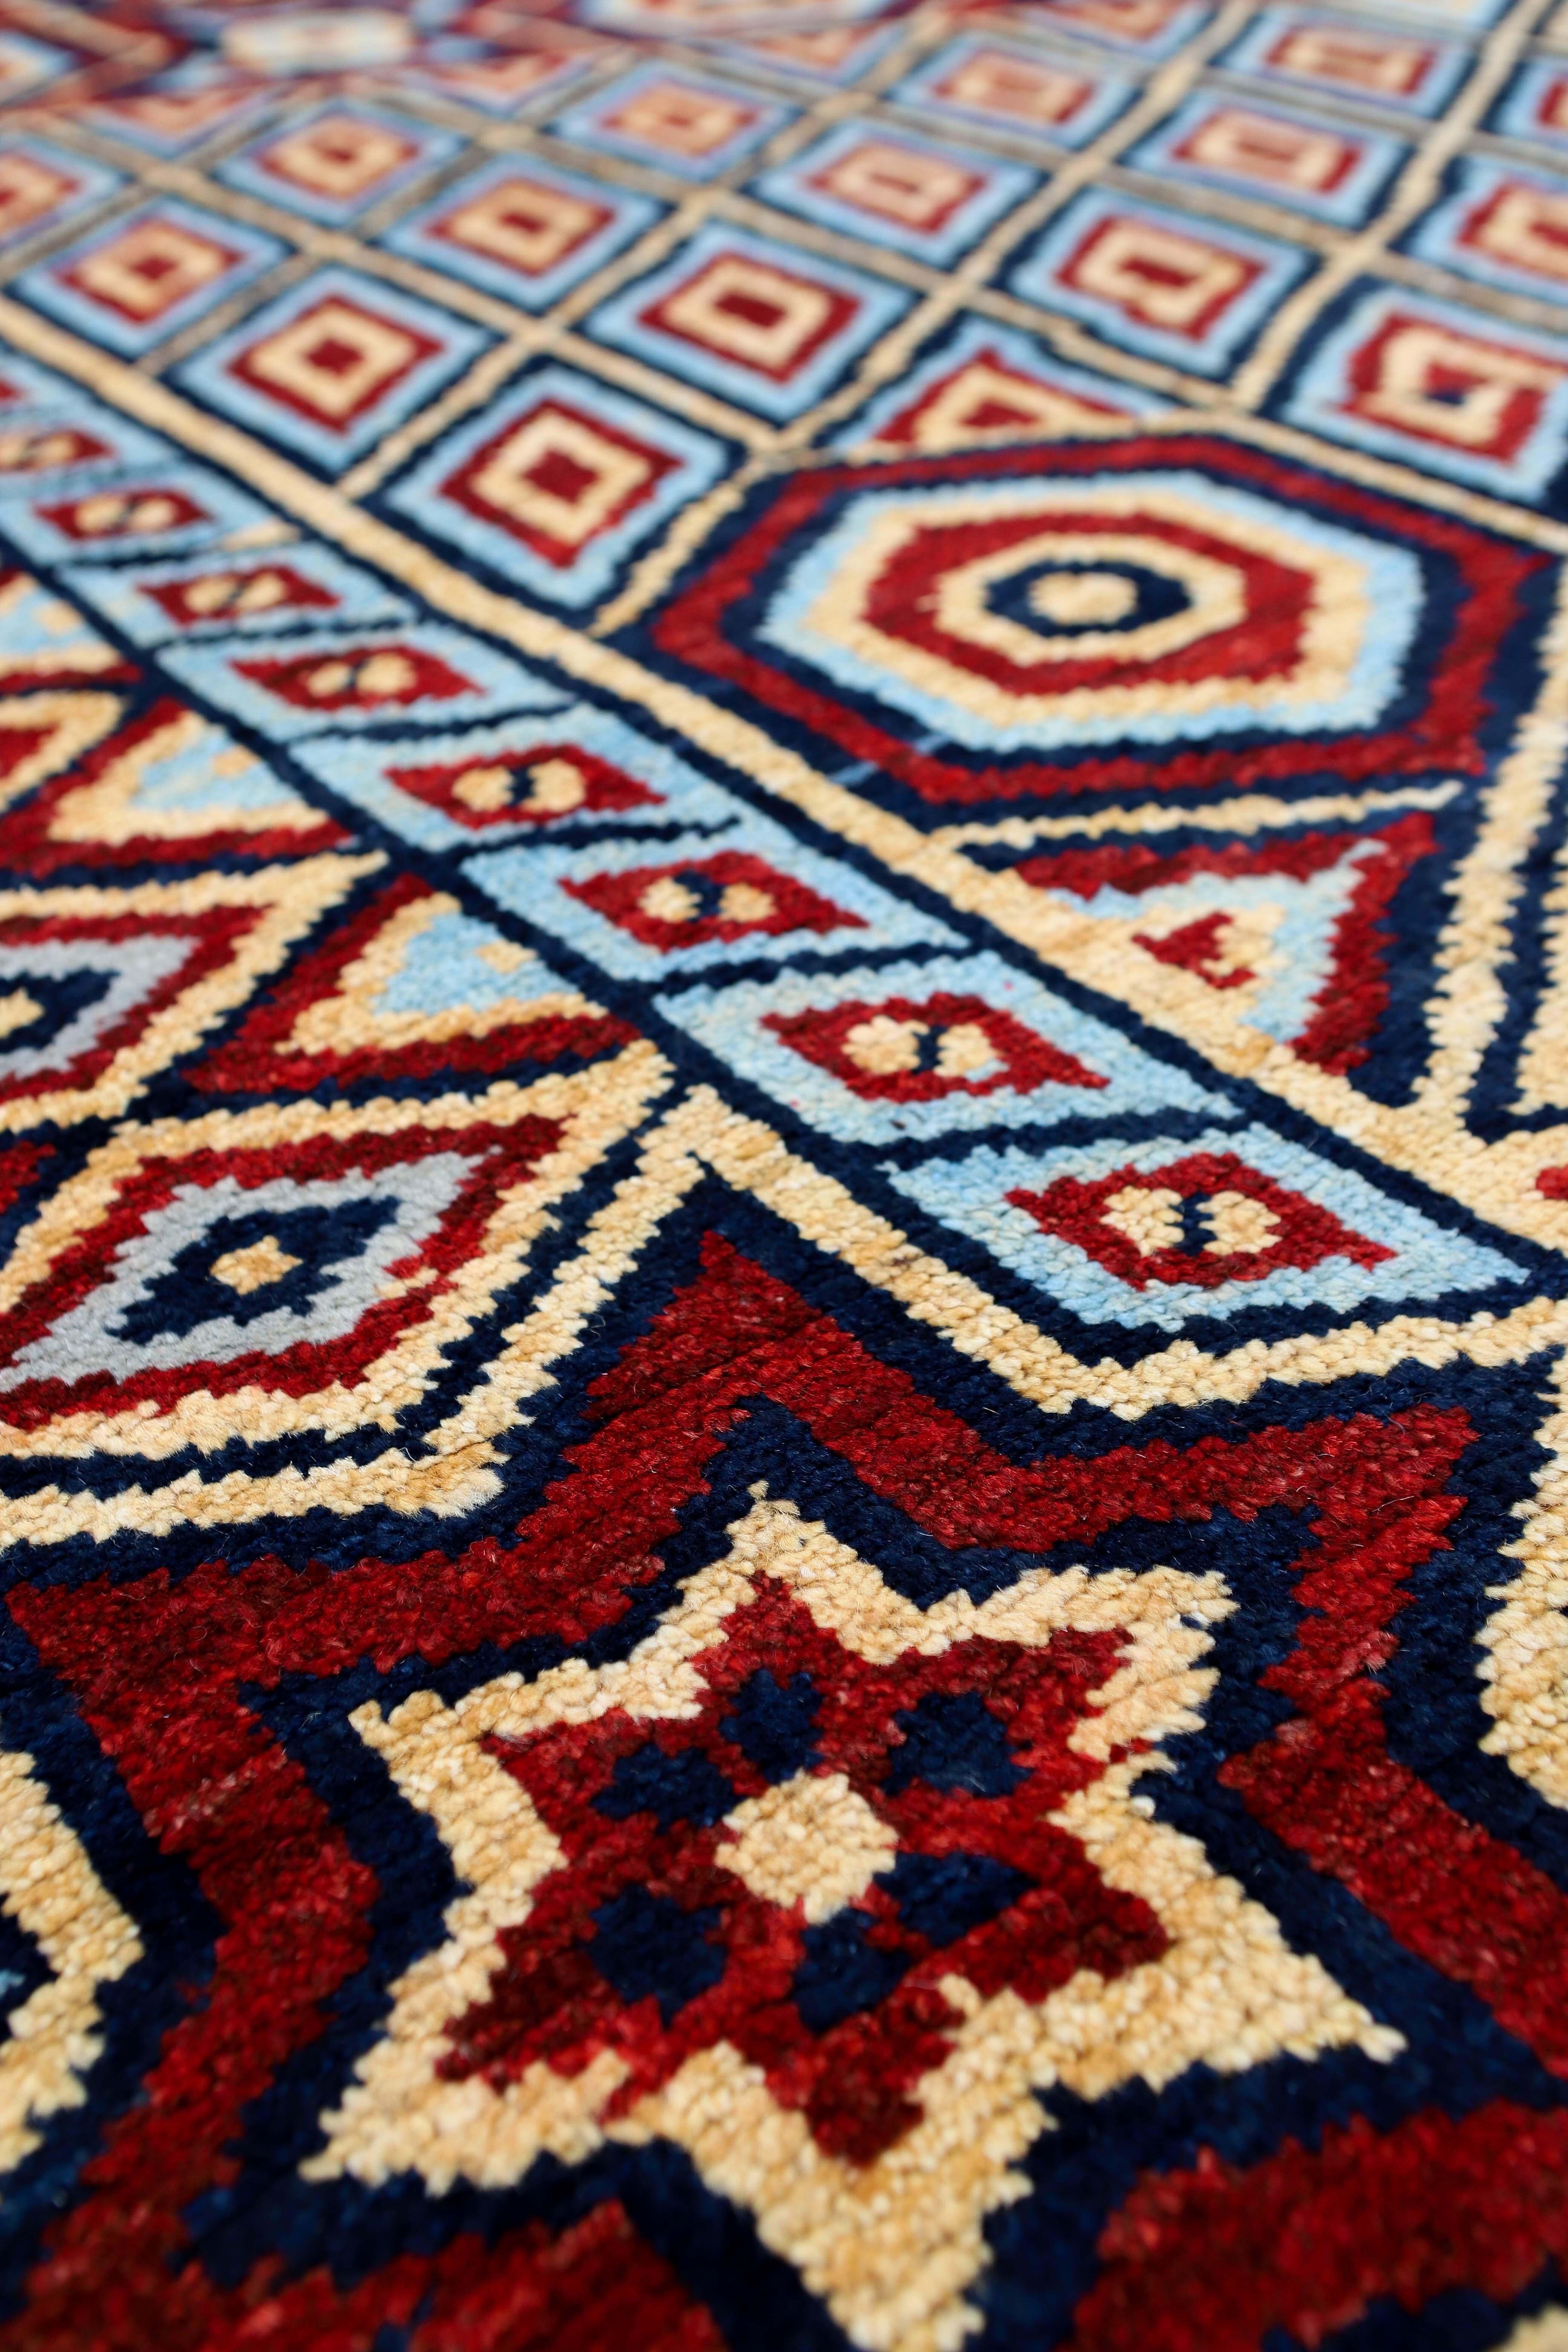 Tapis afghan rouge de conception traditionnelle 10'5'' x 13'8''.
Noué à la main avec de la laine filée à la main, tissé en Afghanistan.
Ce tapis magnifiquement conçu ne manquera pas de se faire remarquer dans n'importe quelle pièce.

Fabriqué en